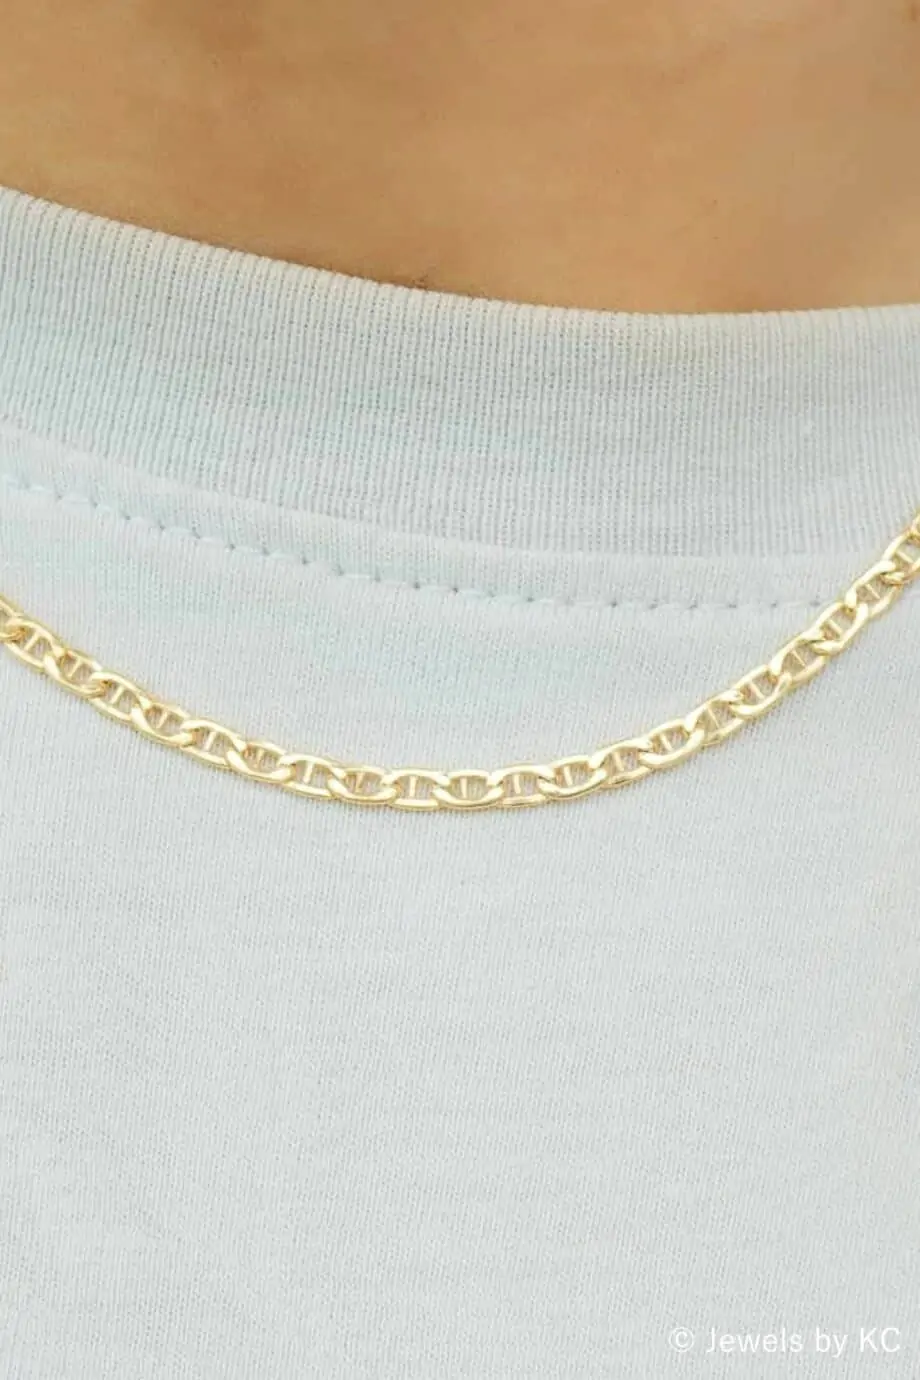 Gouden 'Hooked chain' ketting van Goud op Zilver